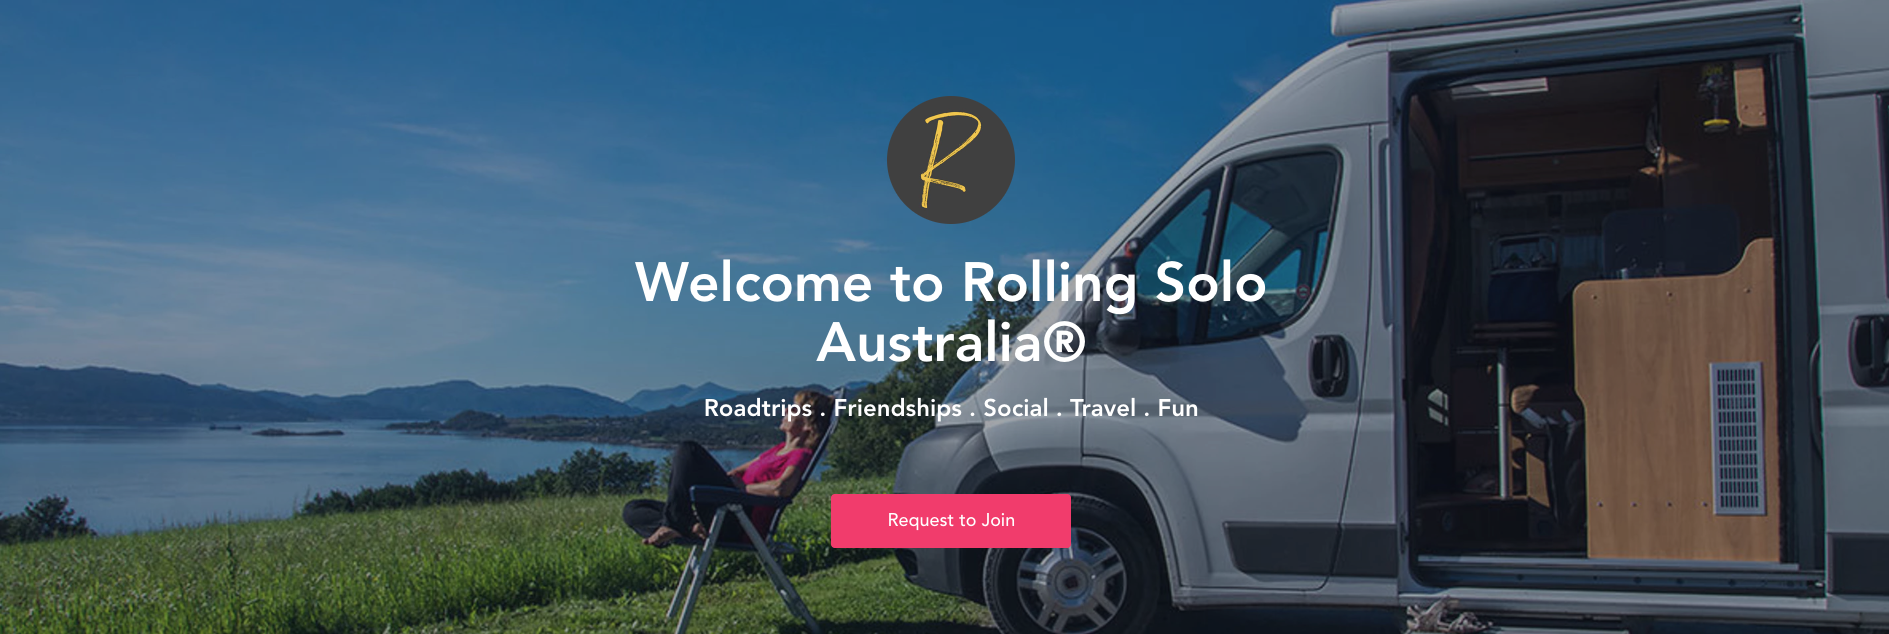 Rolling Solo Australia